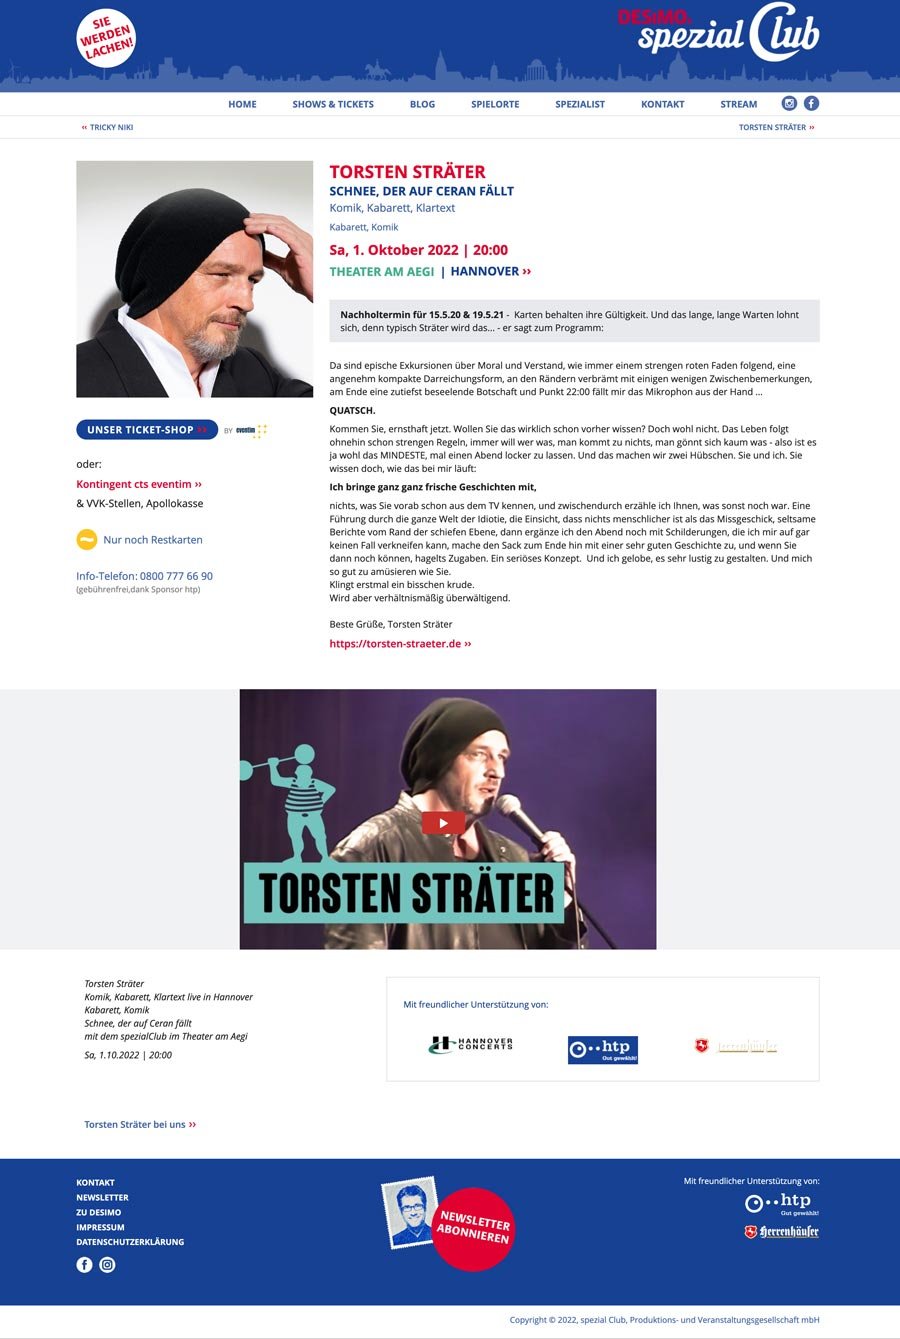 spezial Club Website, Torsten Sträter